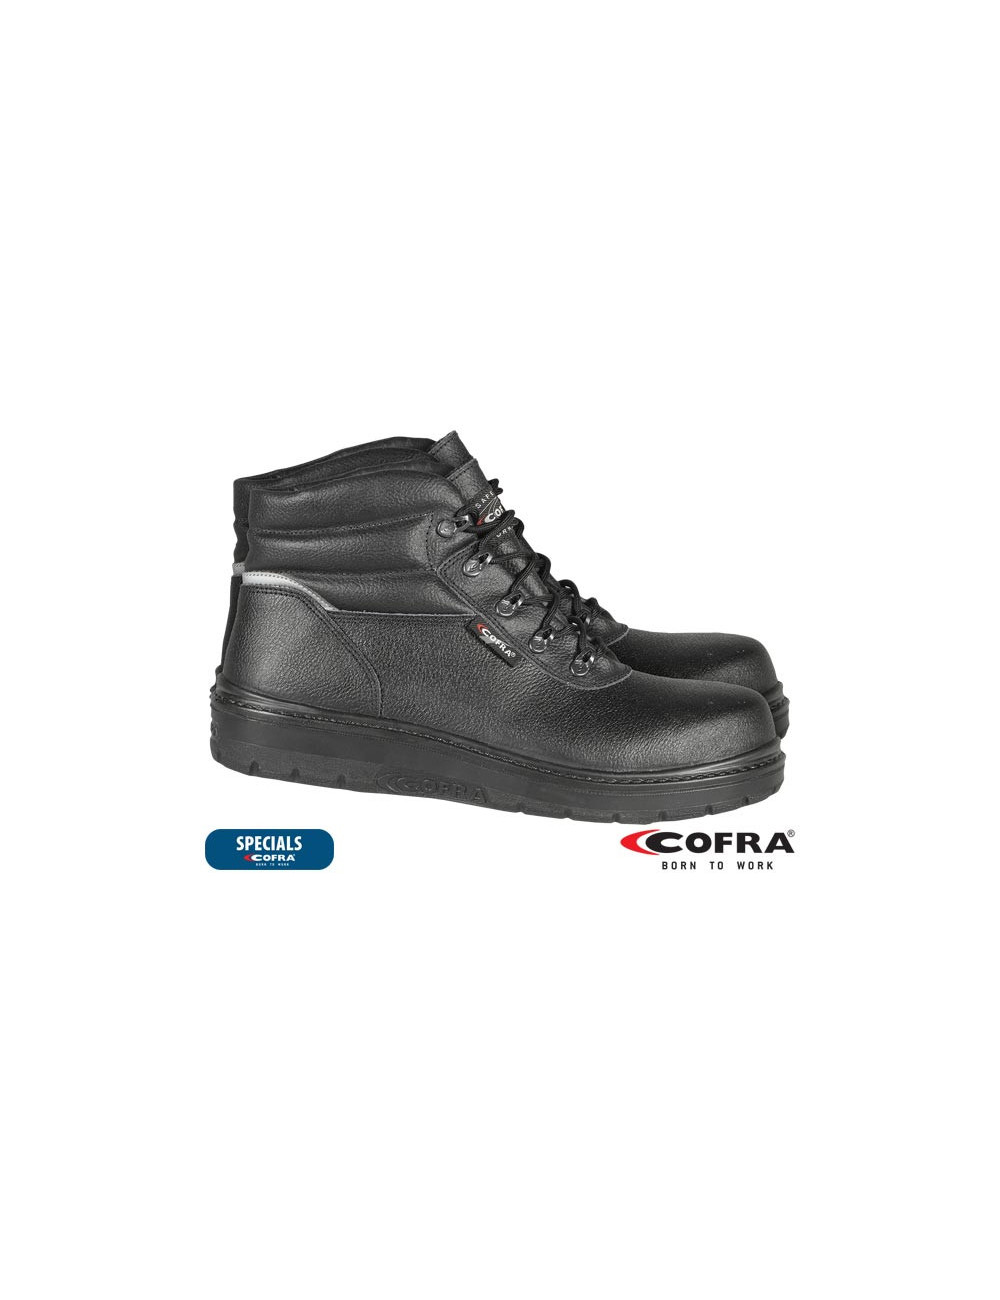 Brc-asphalt safety shoes Cofra